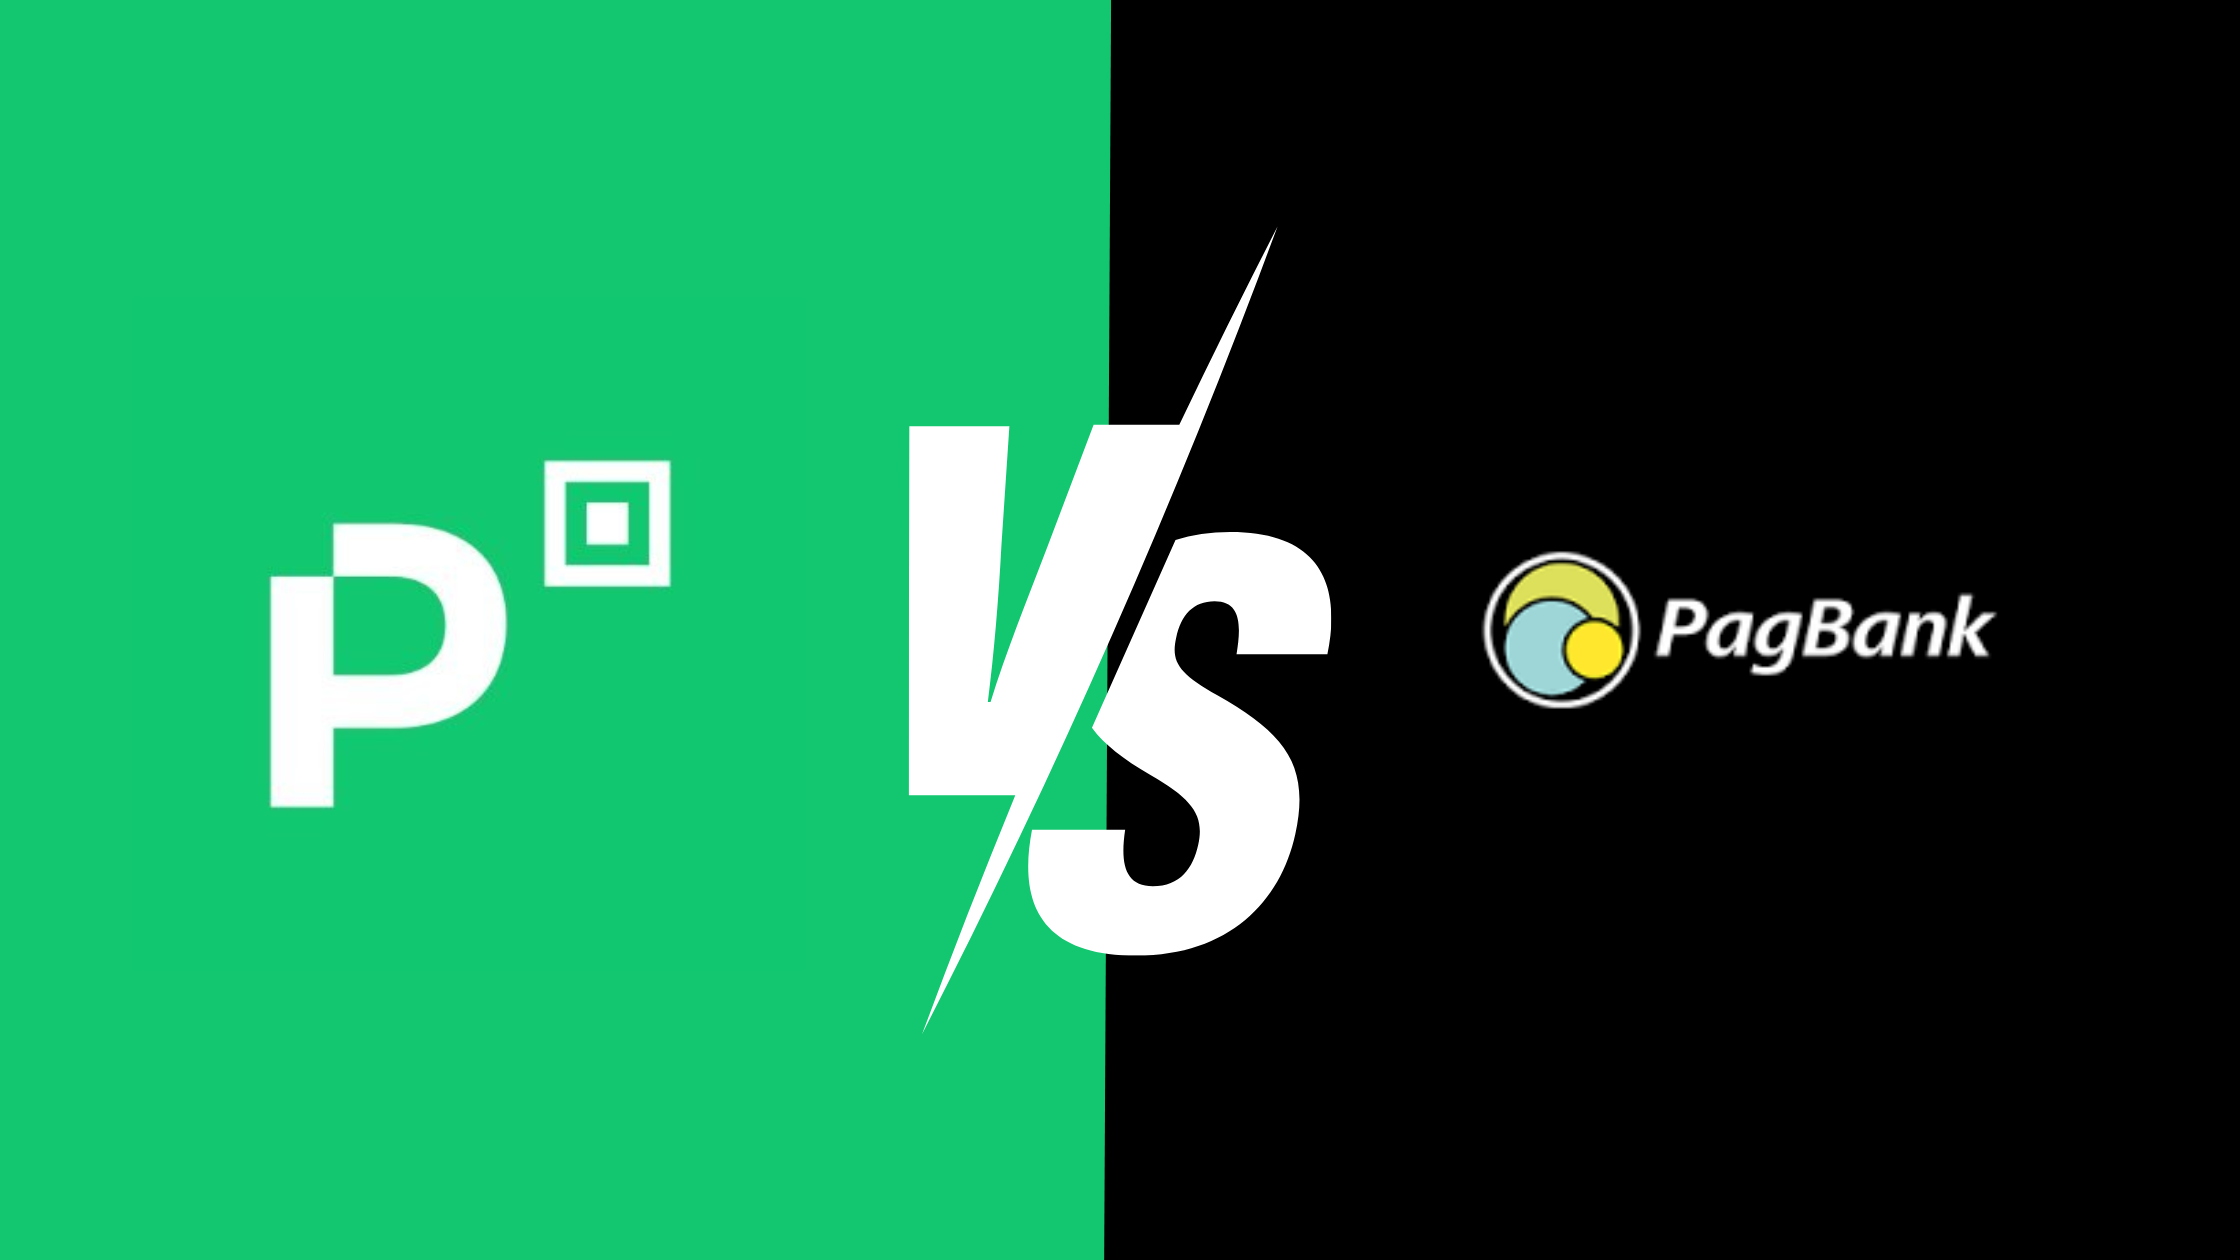 Comparativo entre Picpay e Pagbank para identificar o melhor serviço.